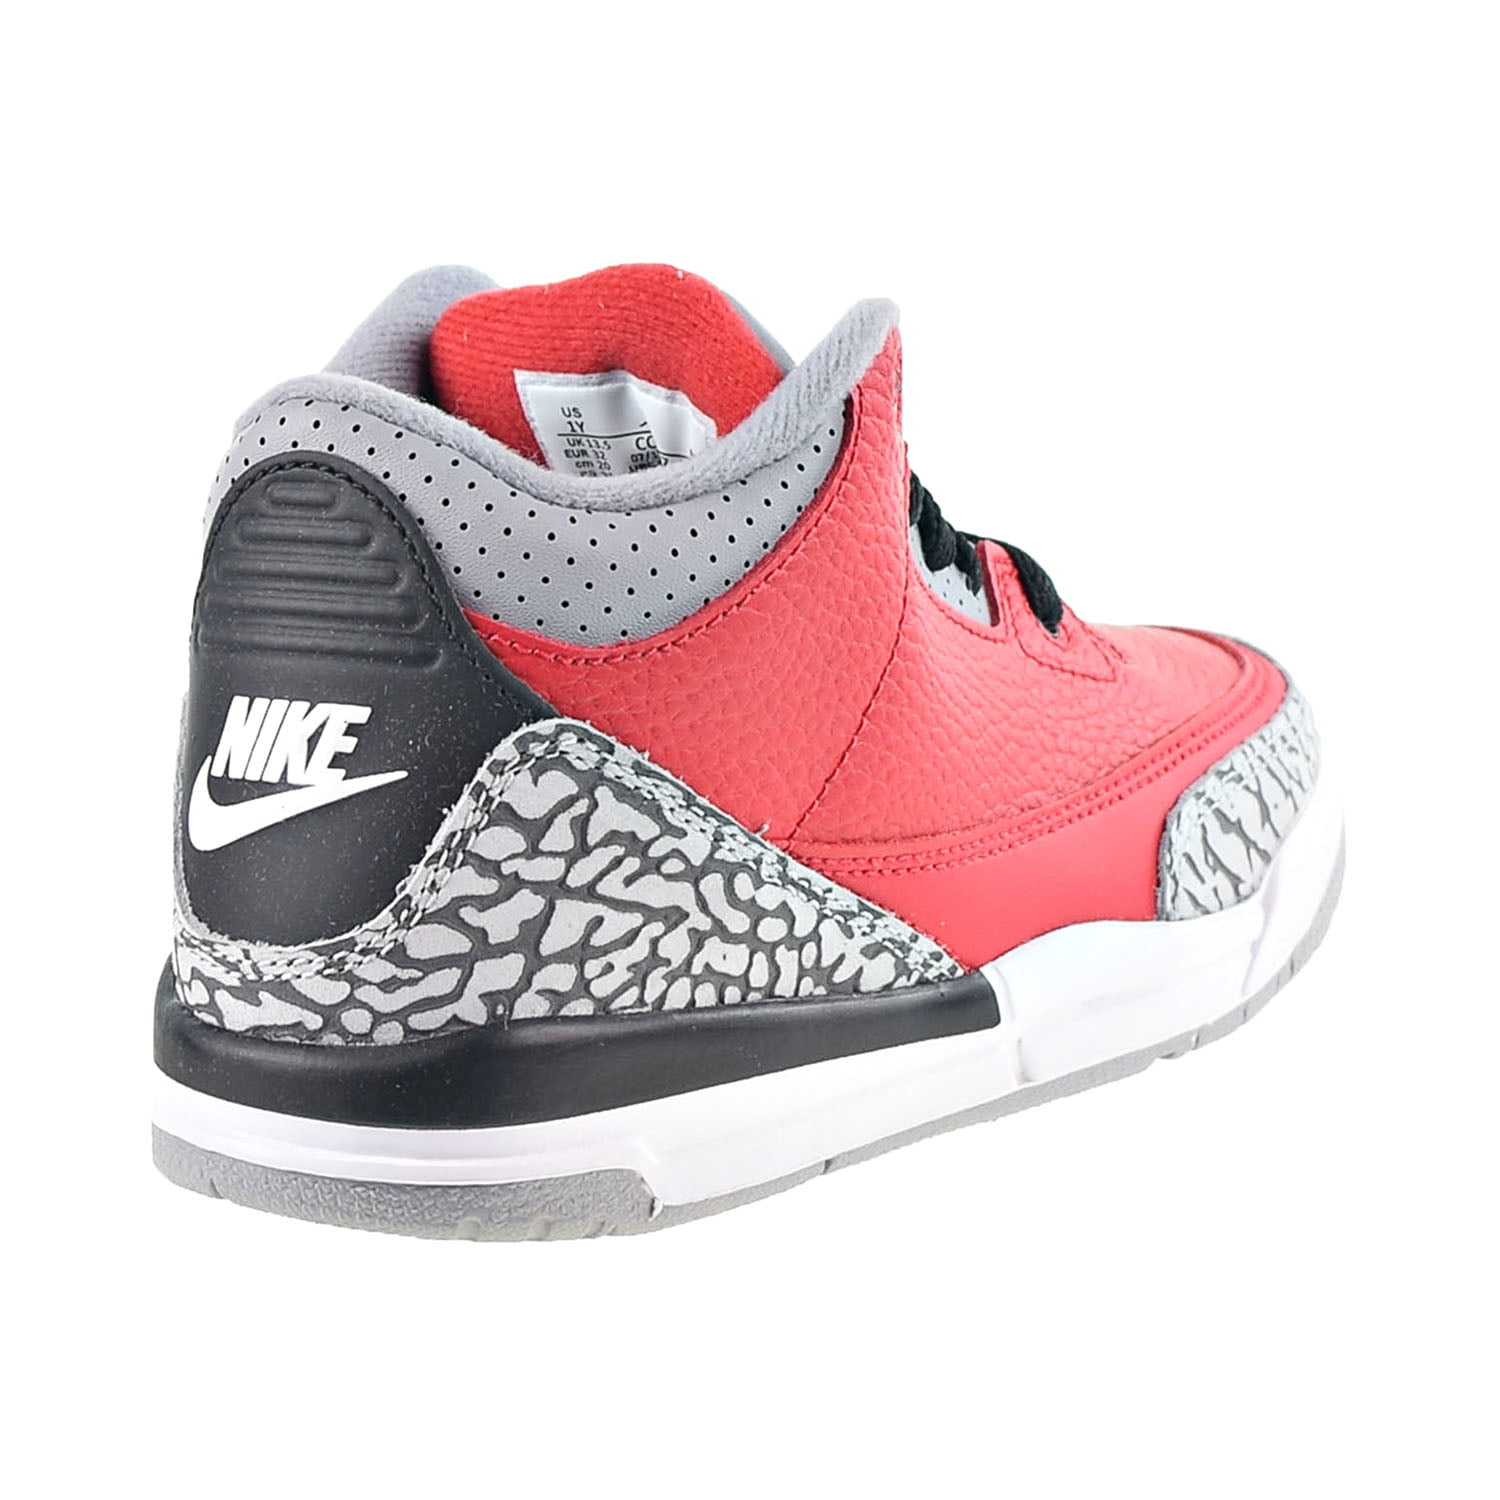 Jordan 3 Retro SE (PS) Little Kids' Shoes Fire Red-Cement Grey 